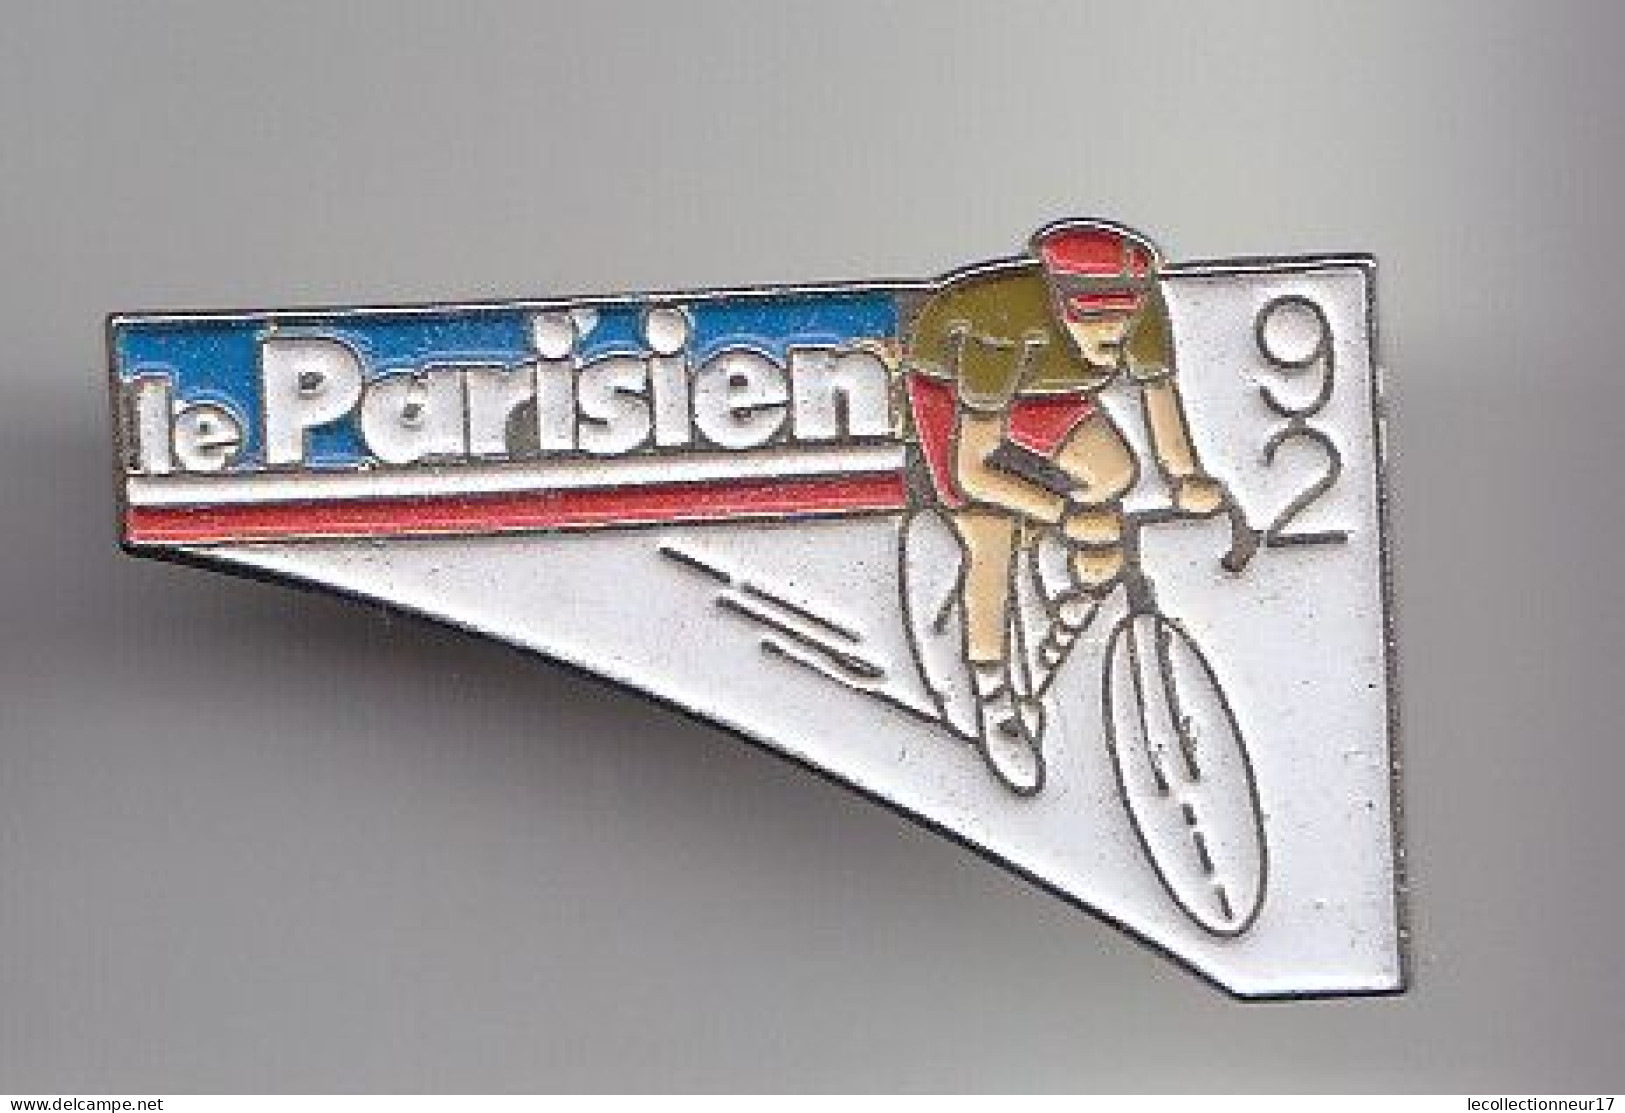 Pin's Vélo Cyclisme Le Parisien 92  Réf 6552 - Wielrennen